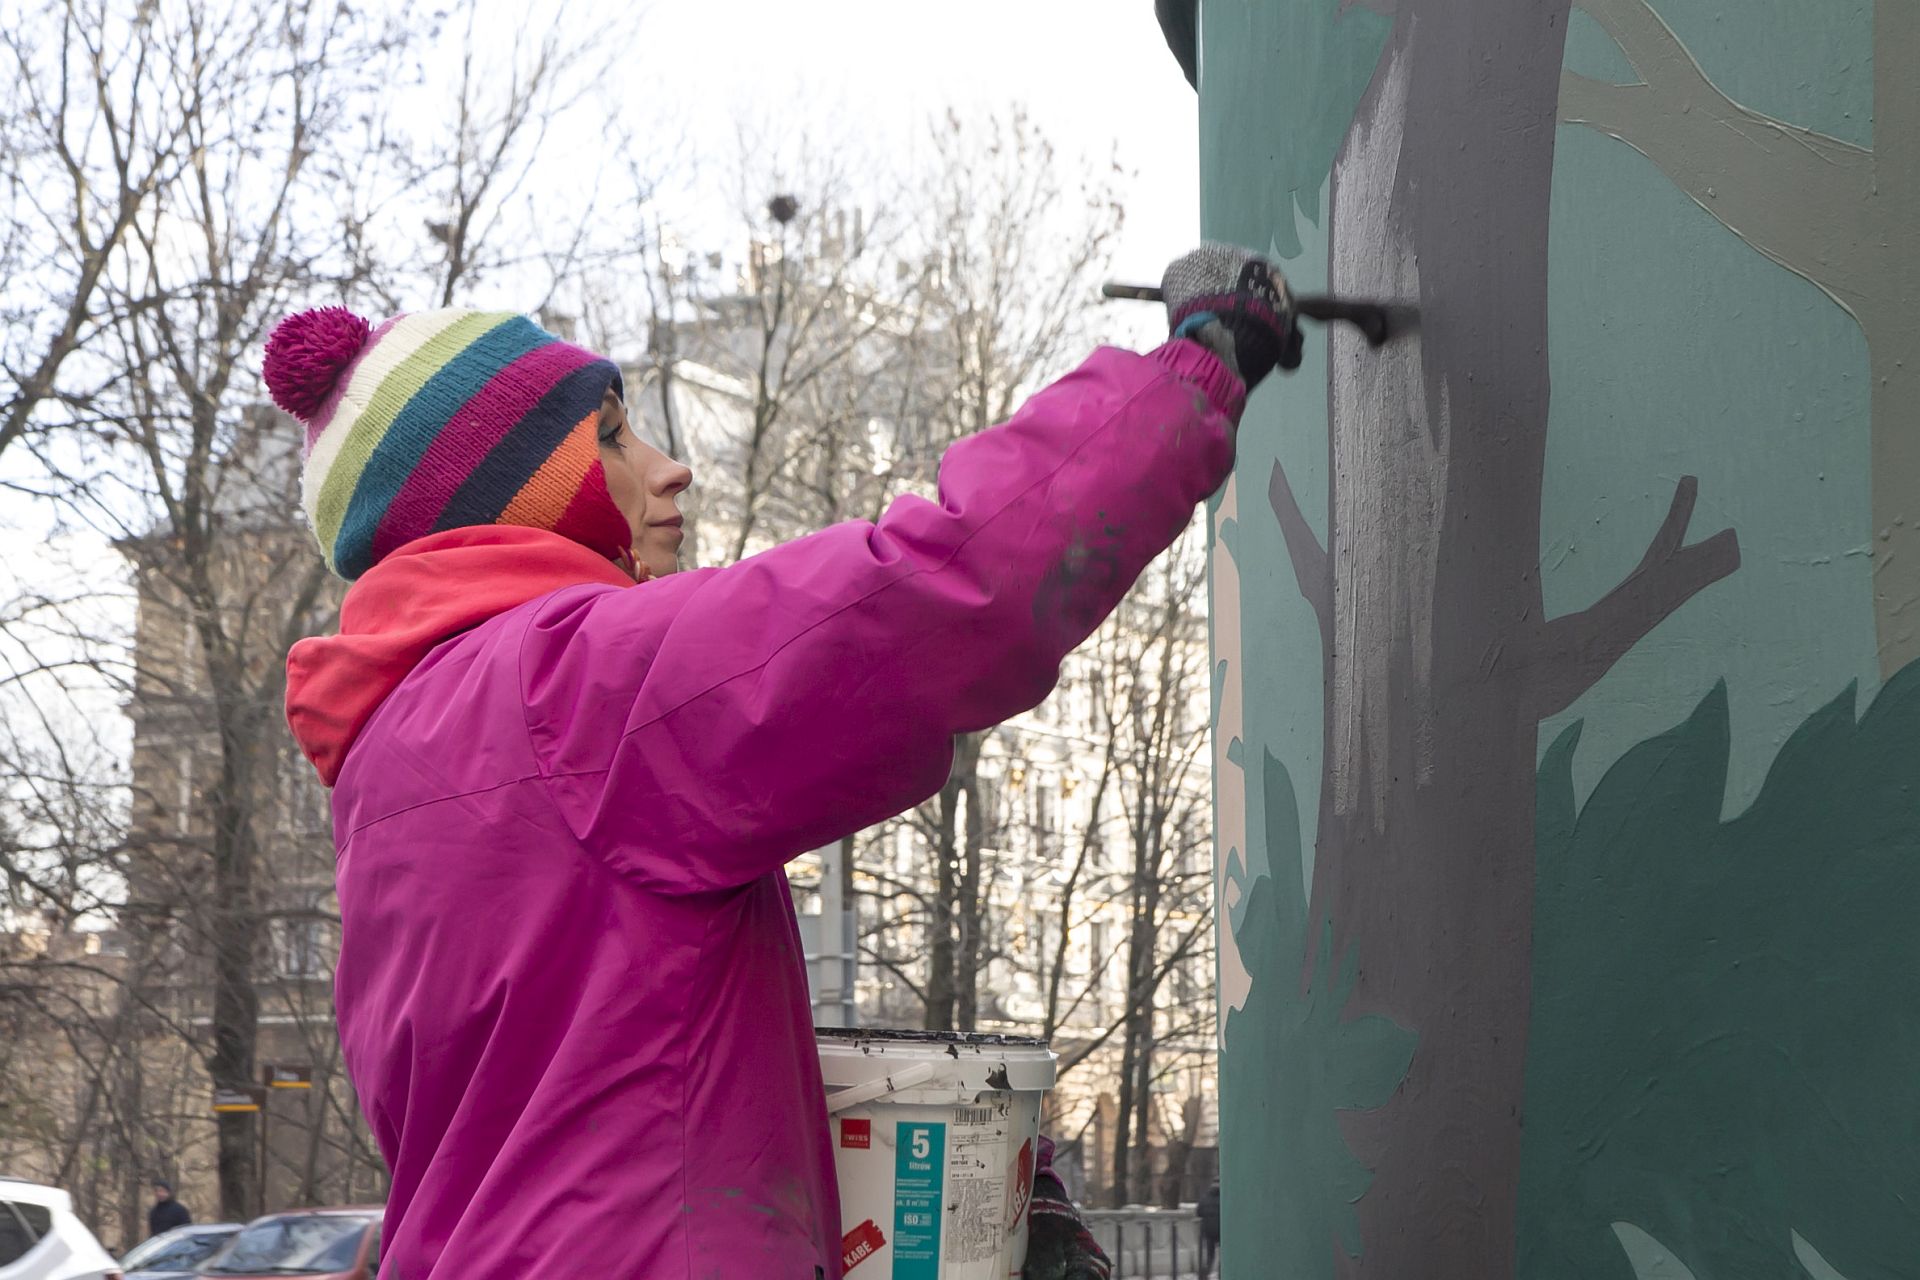 Małgorzata Rozenau working on her mural